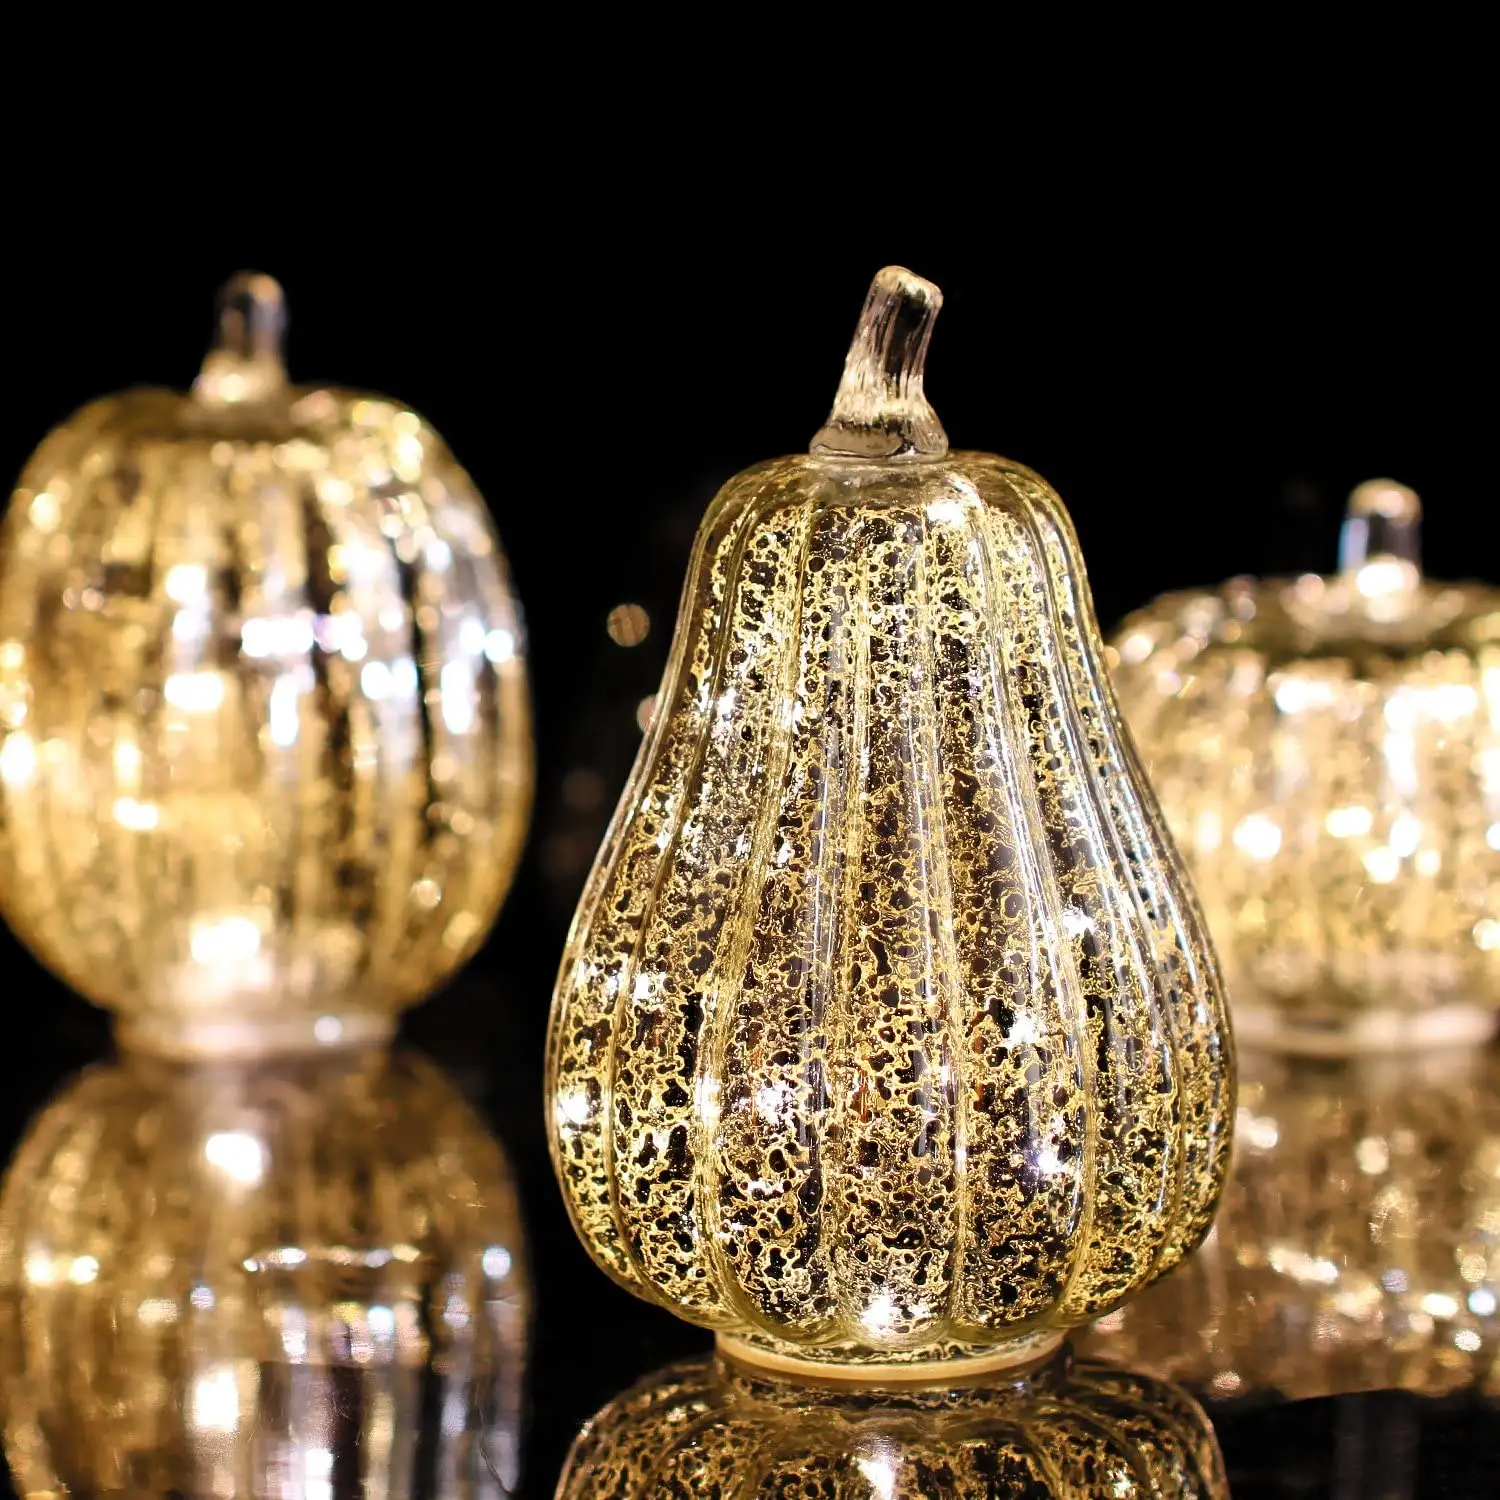 Halloween Glas dekorative Party Kürbis mit LED Licht Weihnachten Kürbis Glas Lampe